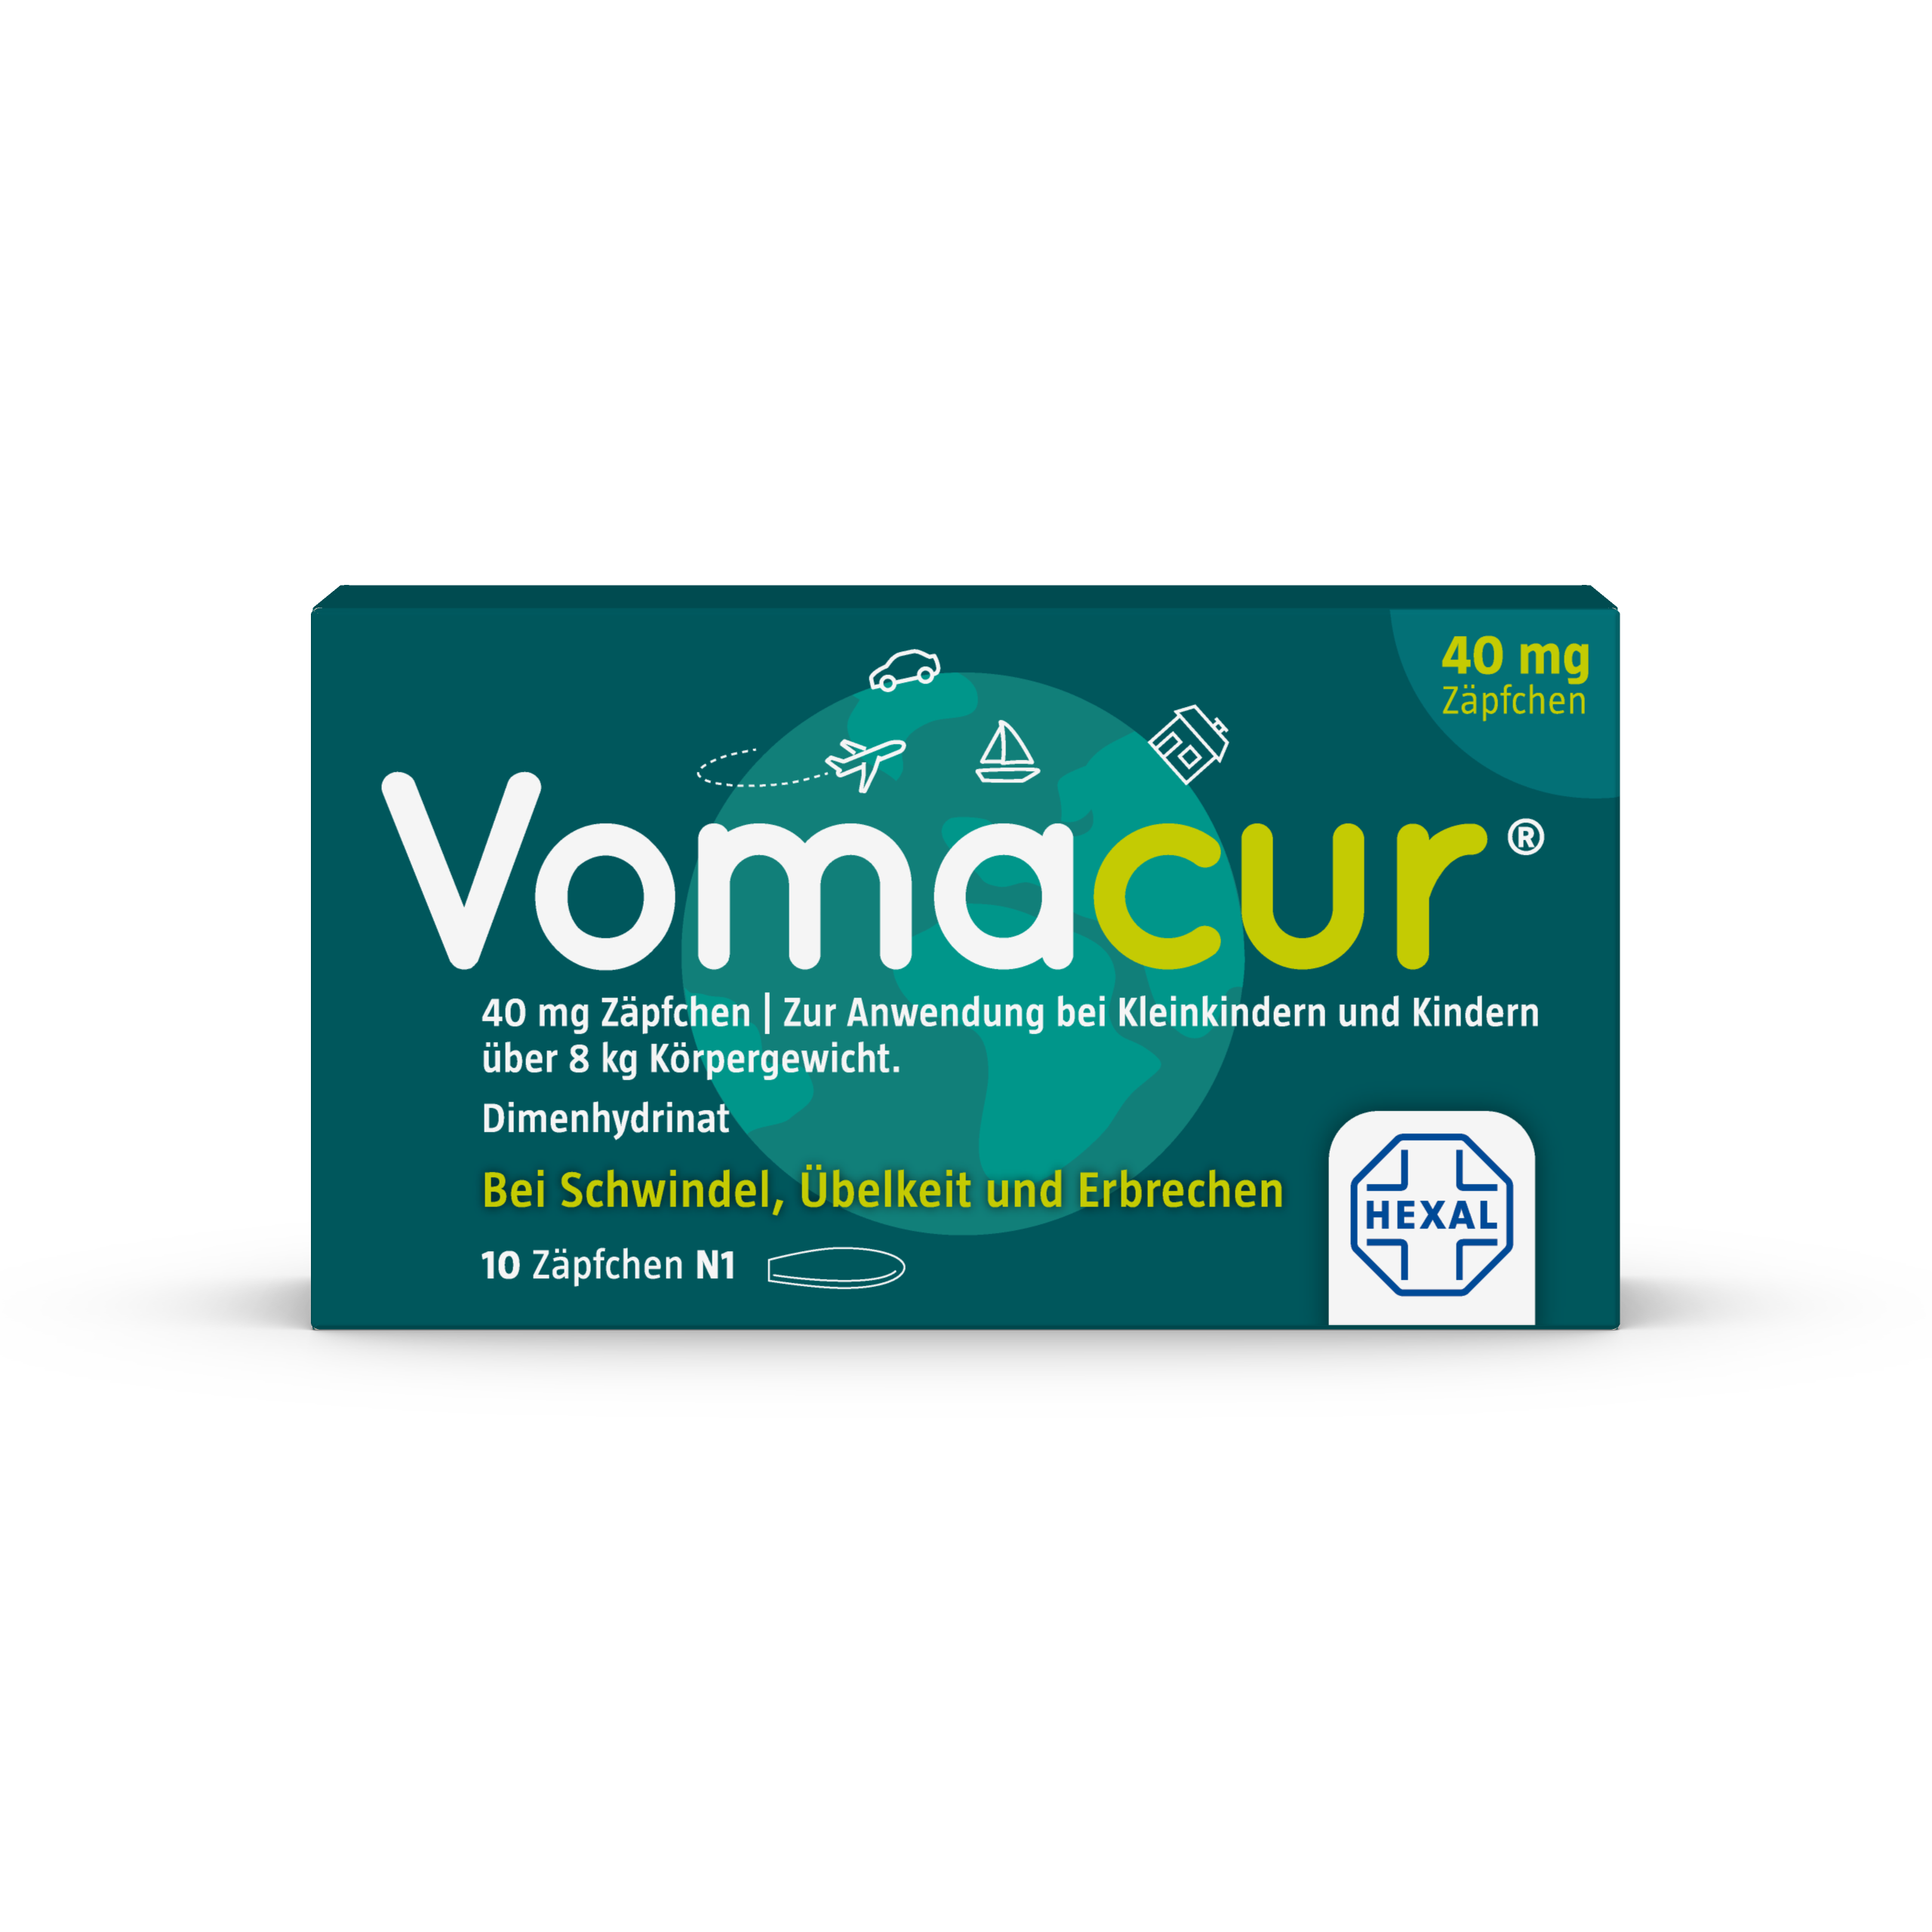 Vomacur 40 mg Zäpfchen (10 Stk)